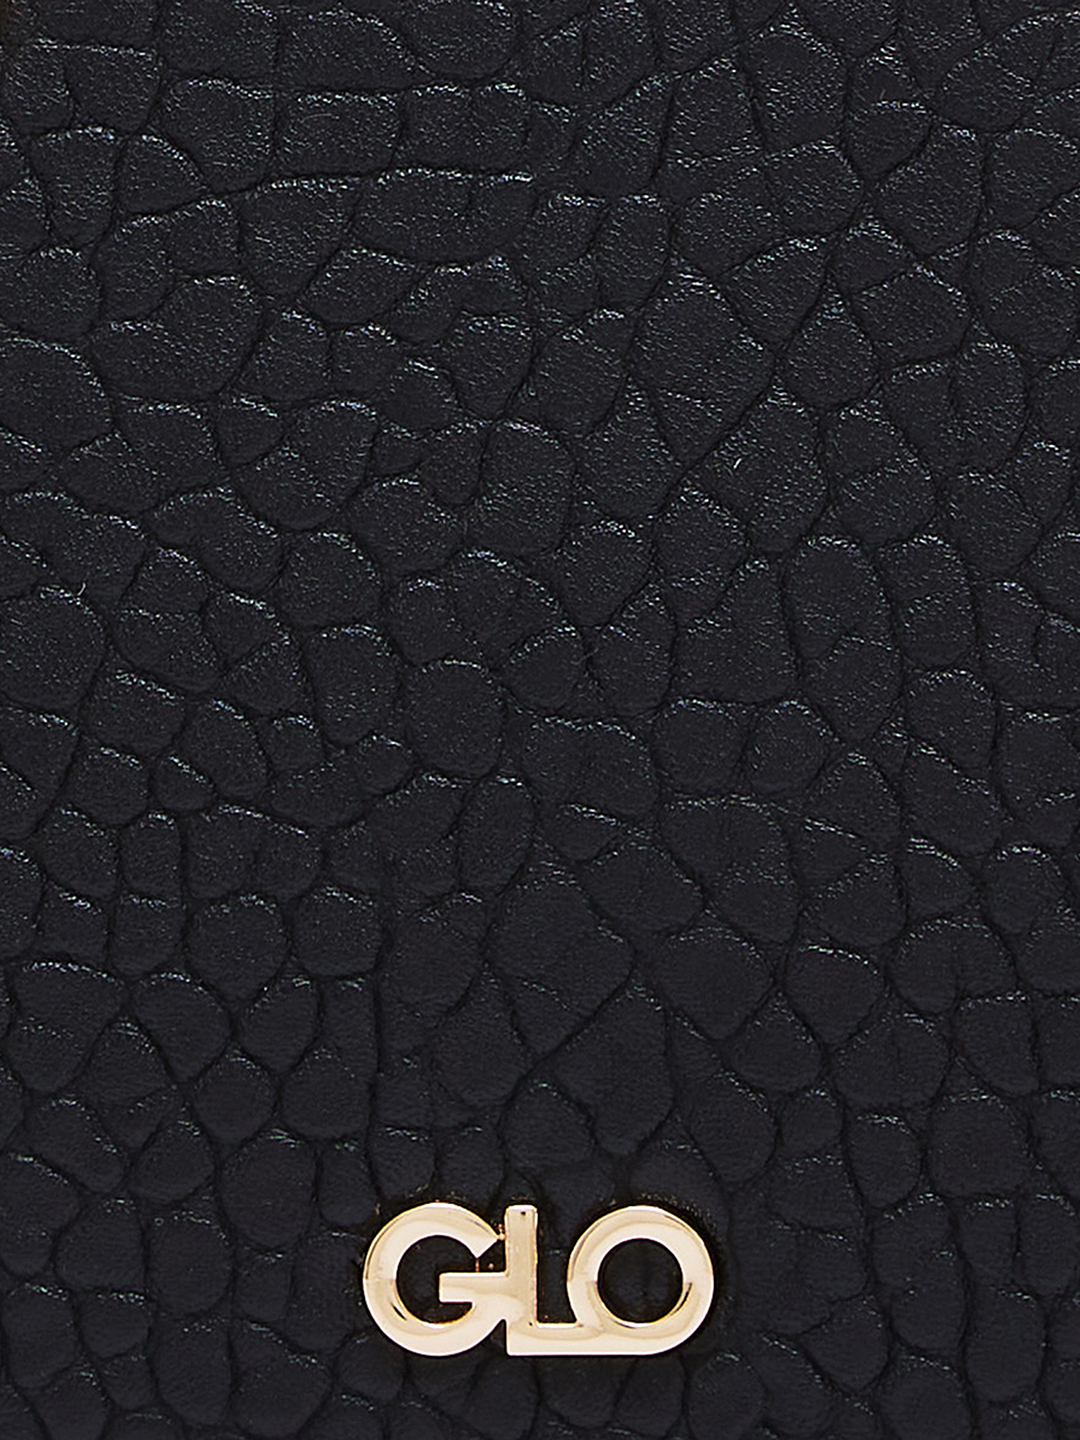 Globus Women Black Textured Casual Handheld Bag